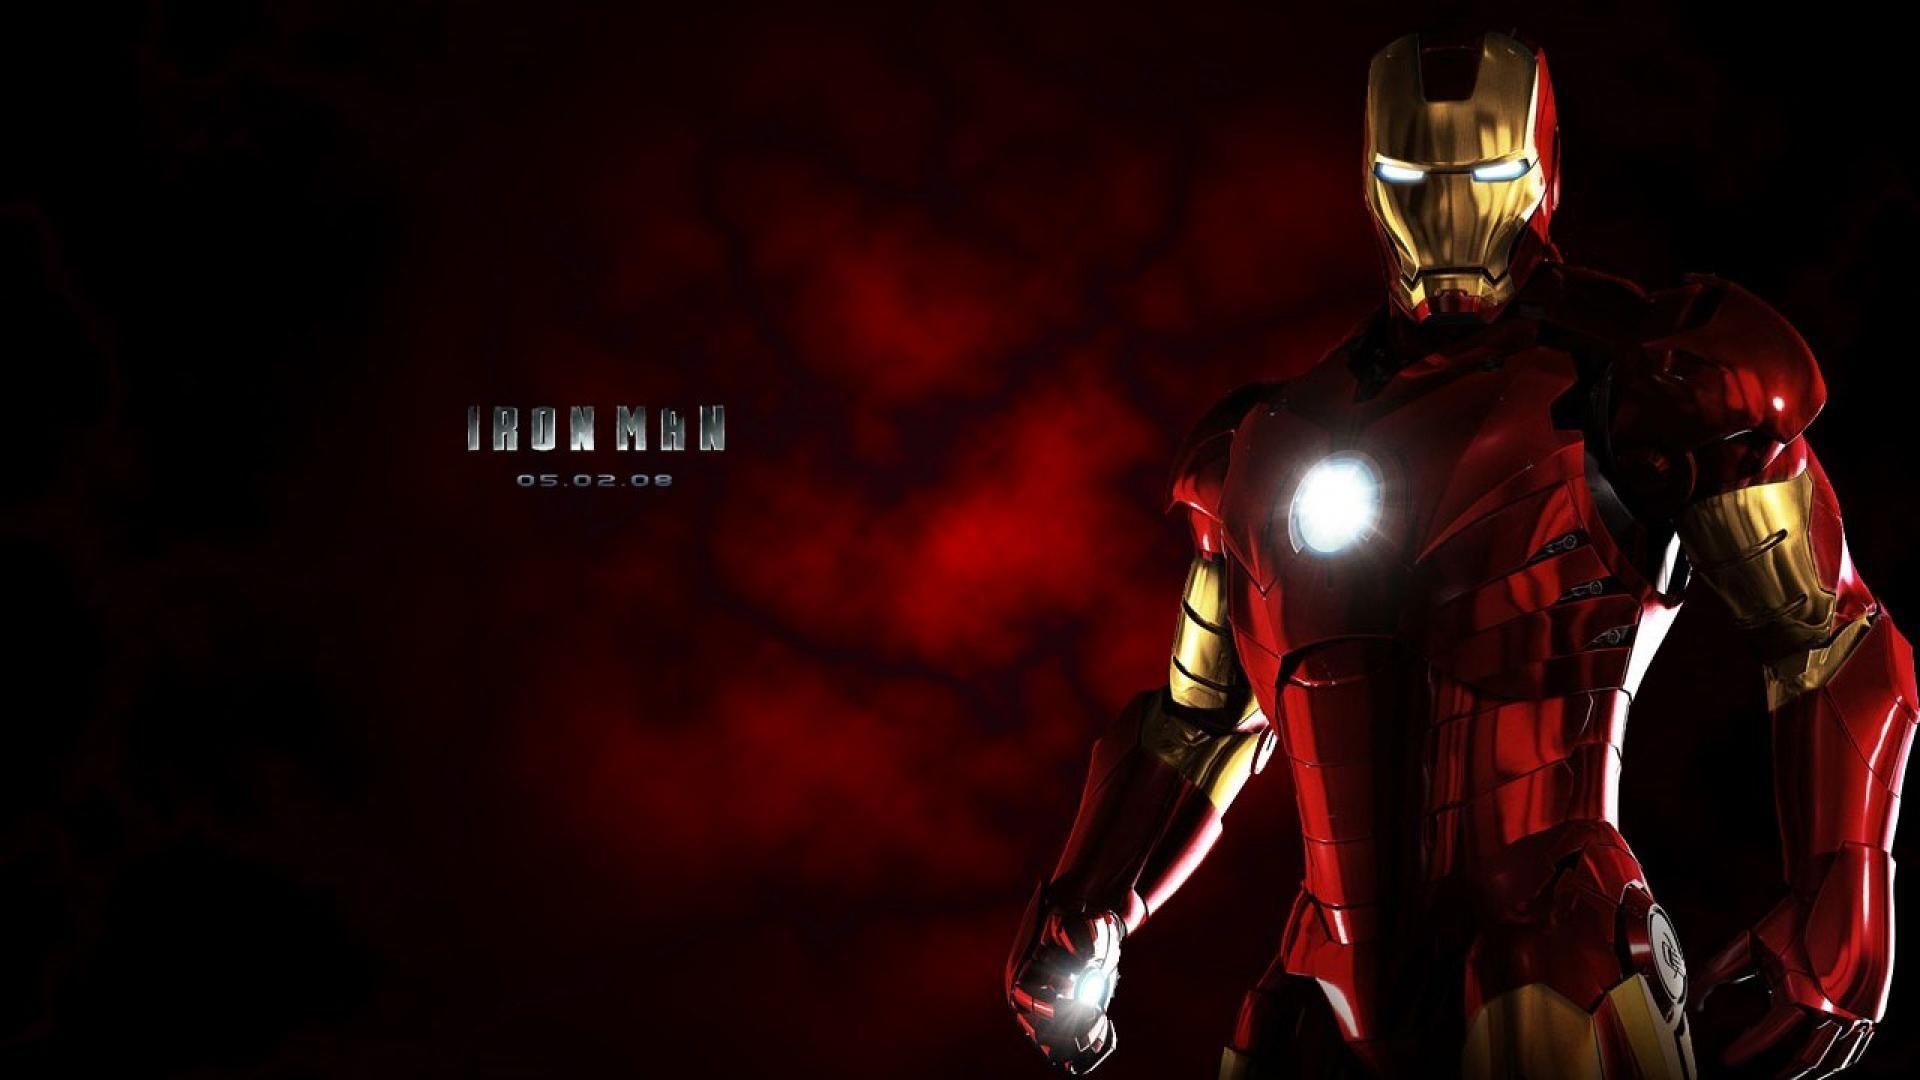 Iron Man x Resolution Wallpaper. wallpaper. Iron man